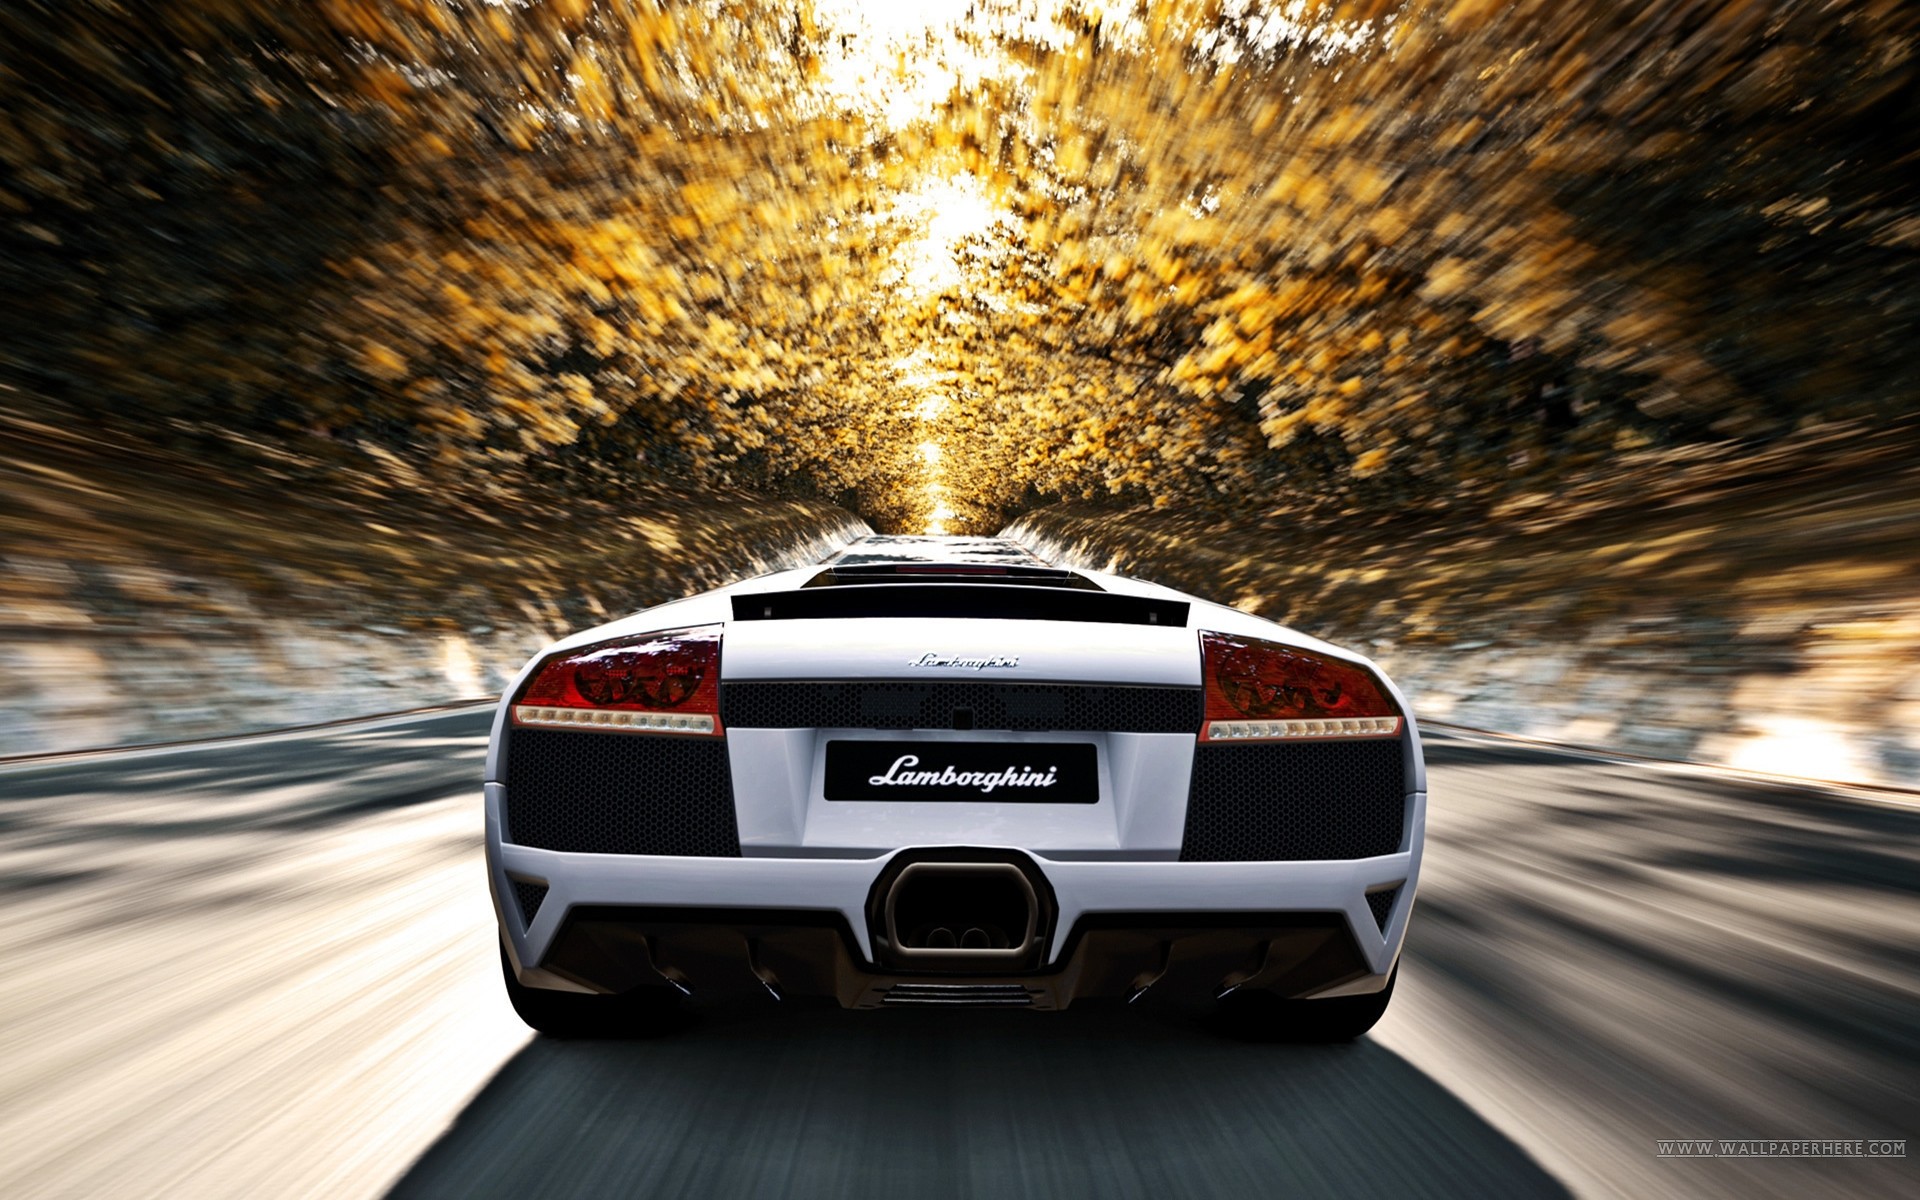 car, Lamborghini, Lamborghini Murcielago, Motion Blur Wallpaper